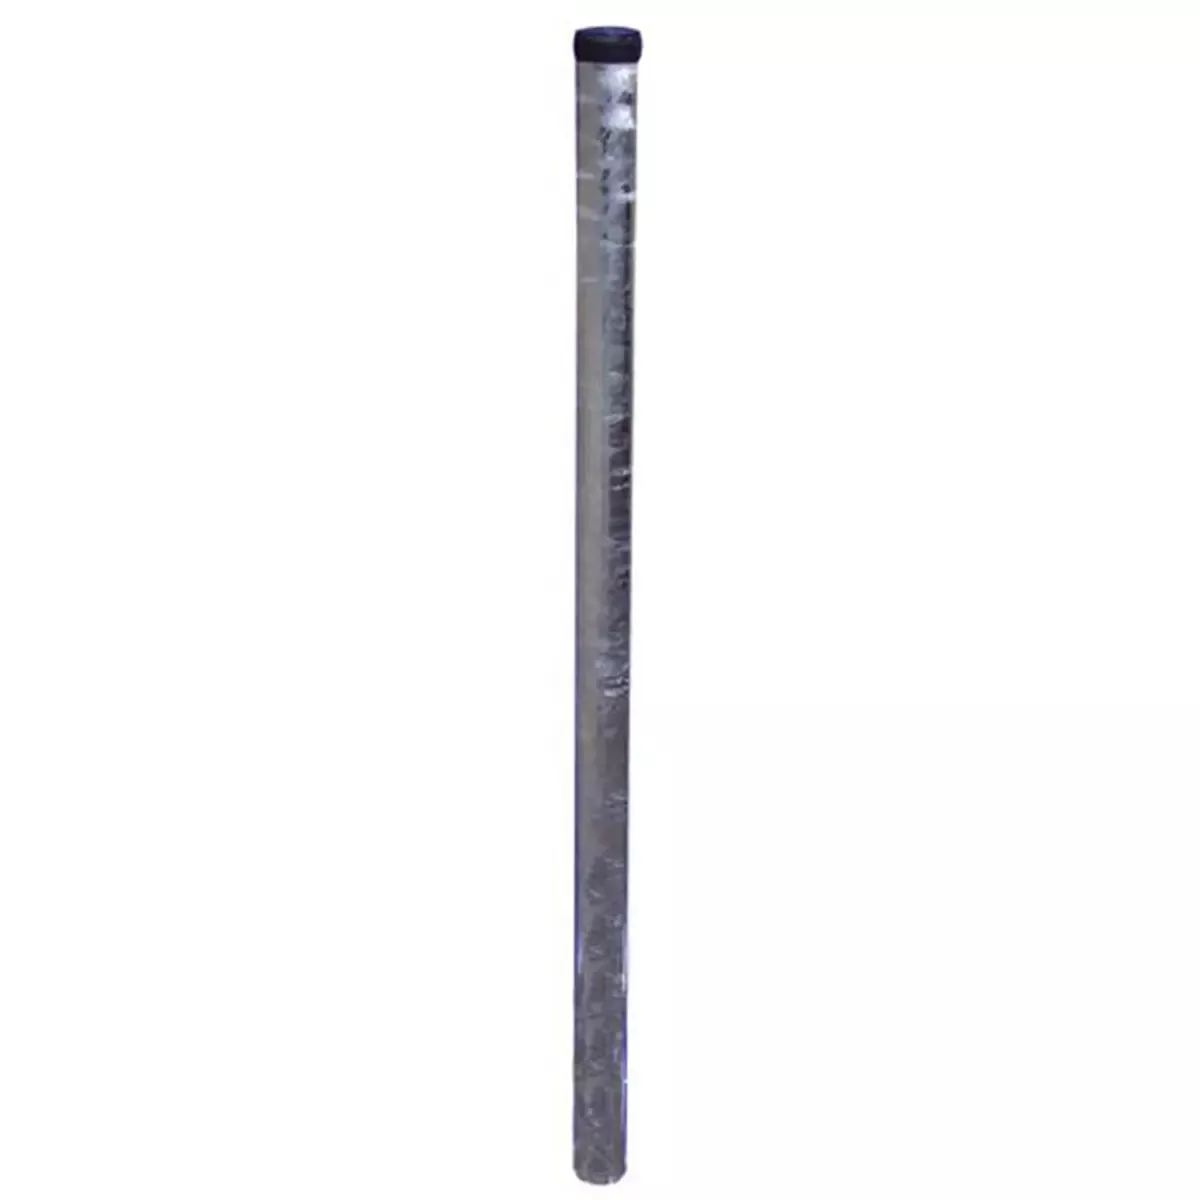 Rohrpfosten aus Stahl, ø 76 mm, Wandstärke 2,0 mm, Länge 3.250 mm, nach IVZ S332